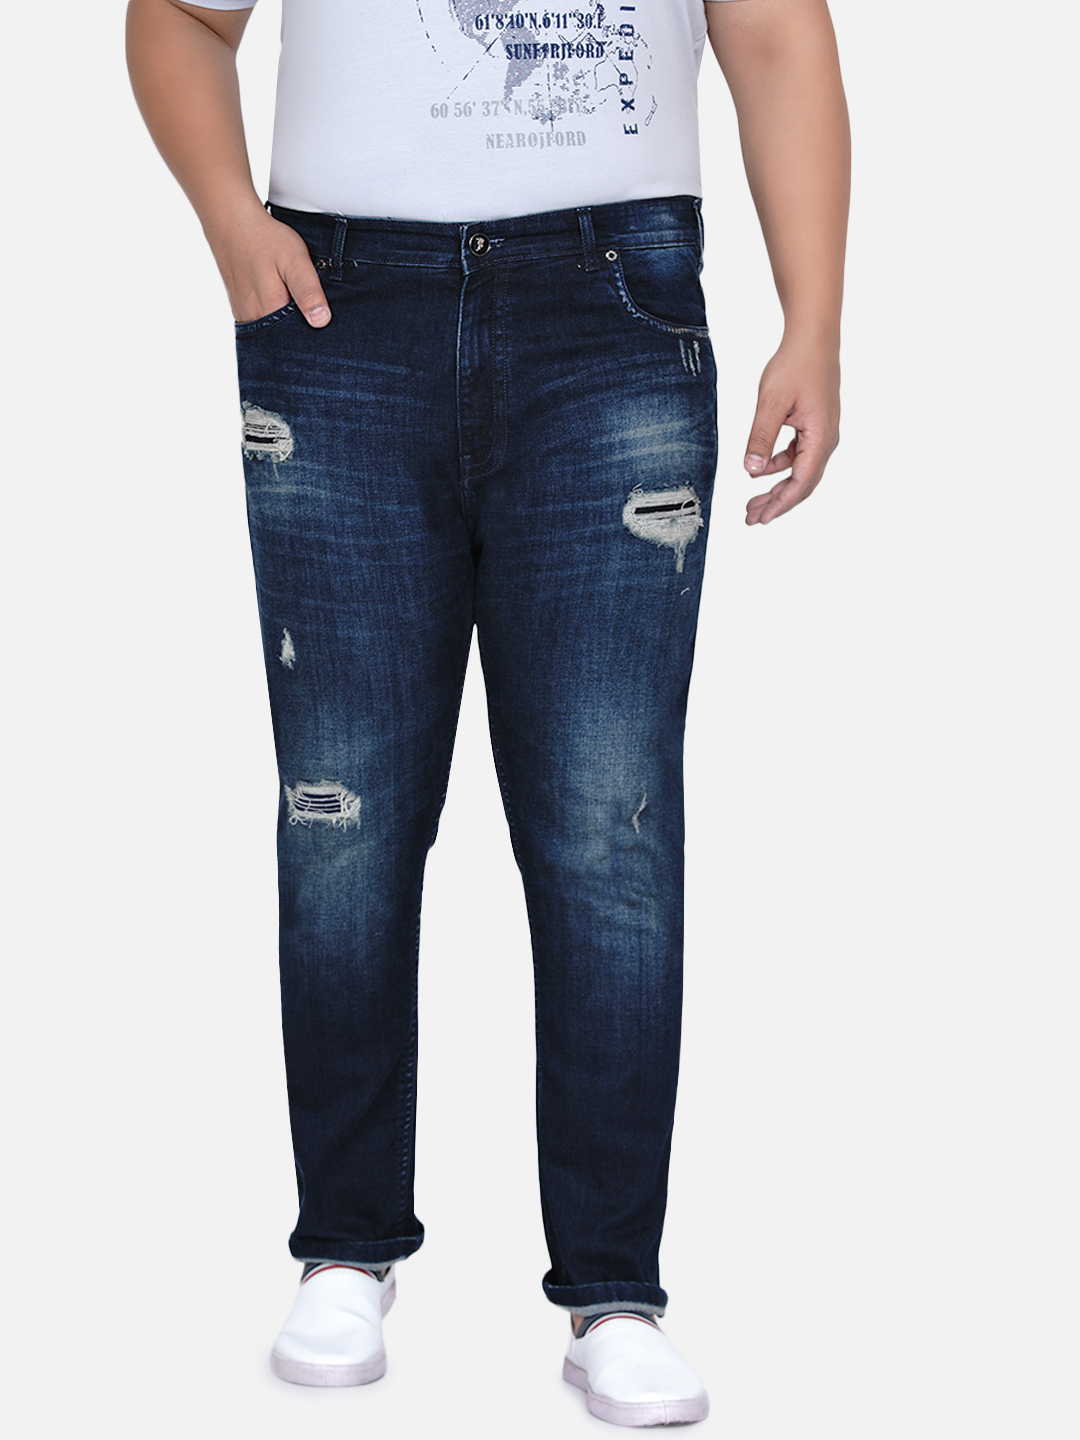 bottomwear/jeans/JPJ6030/jpj6030-4.jpg